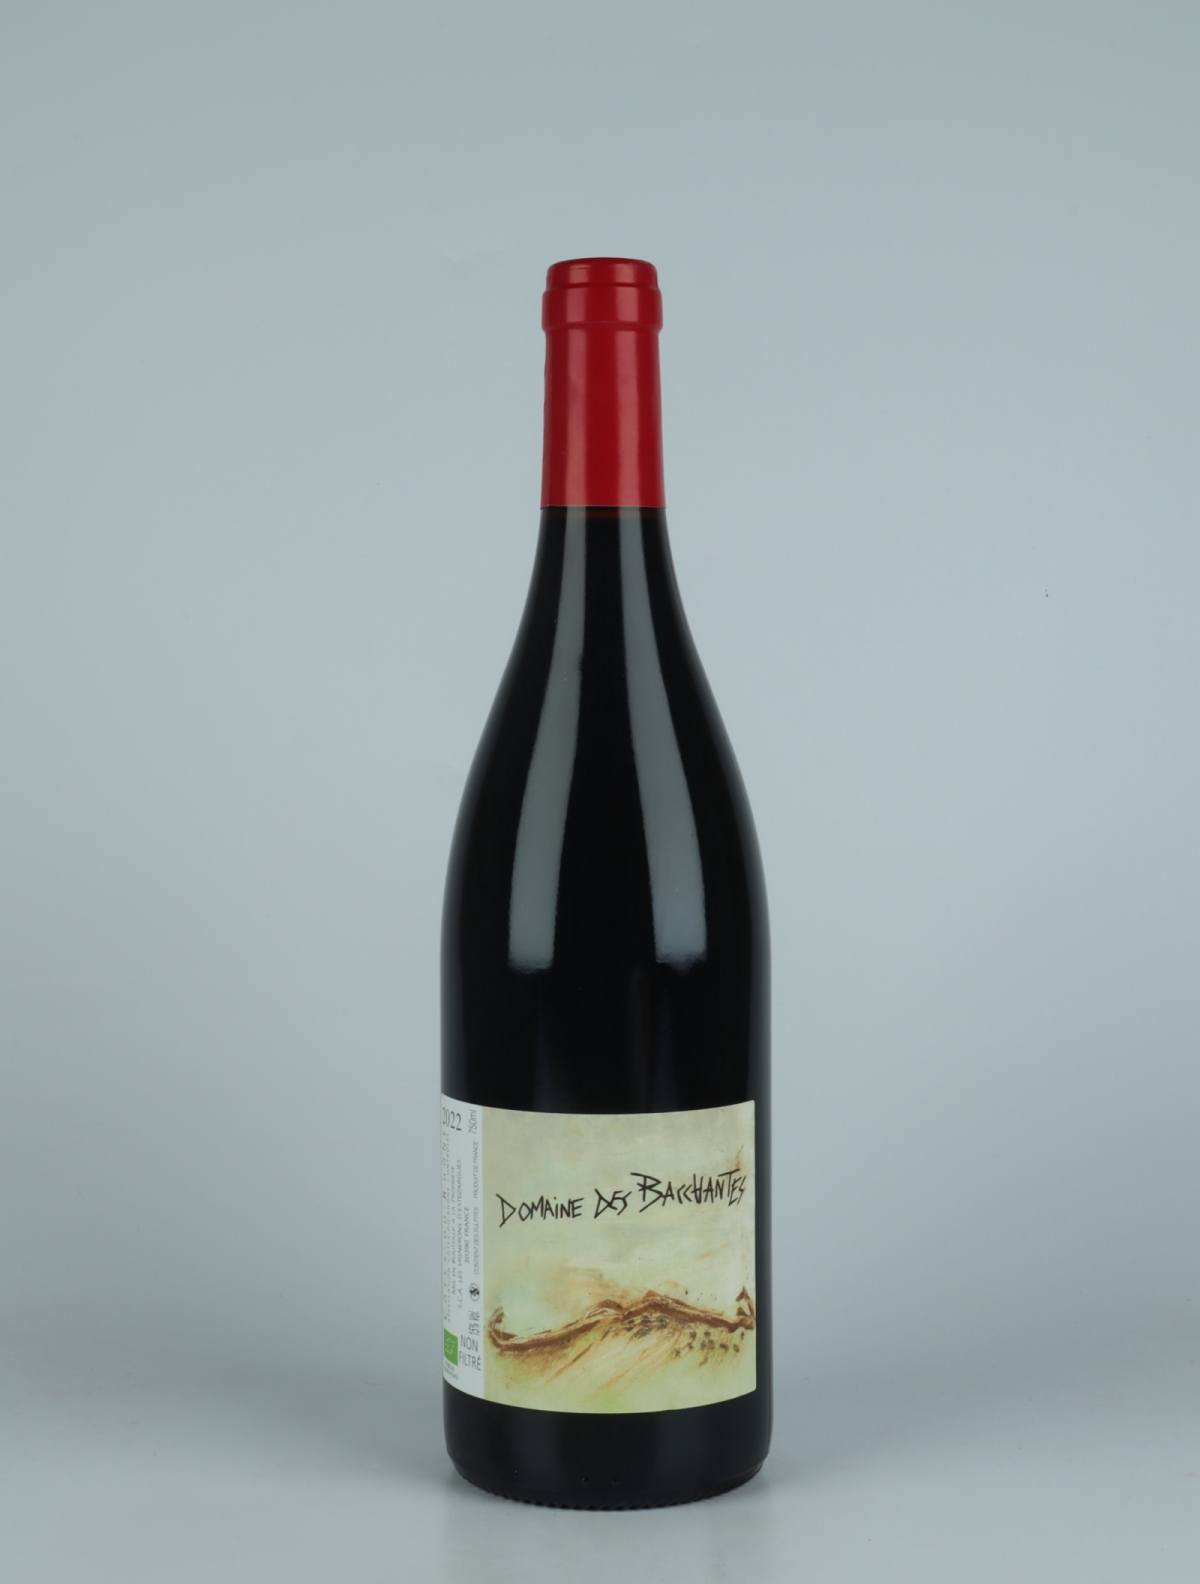 A bottle 2022 Côtes du Rhône - Domaine des Bacchantes Red wine from Les Vignerons d’Estézargues, Rhône in France